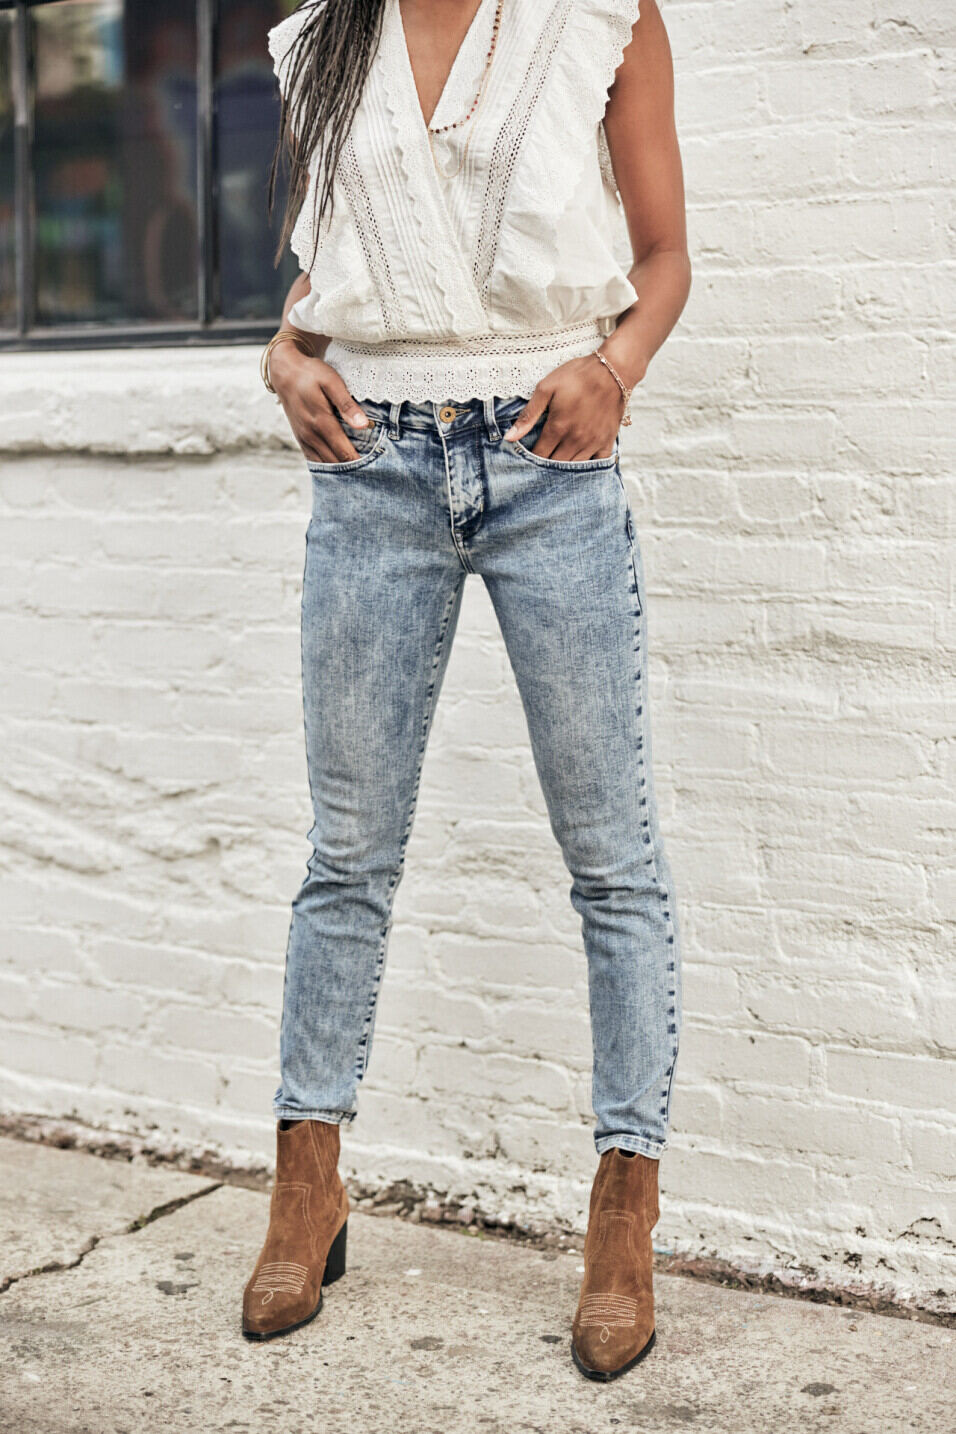 Cropped Jeans Woman Sophy Boceano | Freeman T. Porter